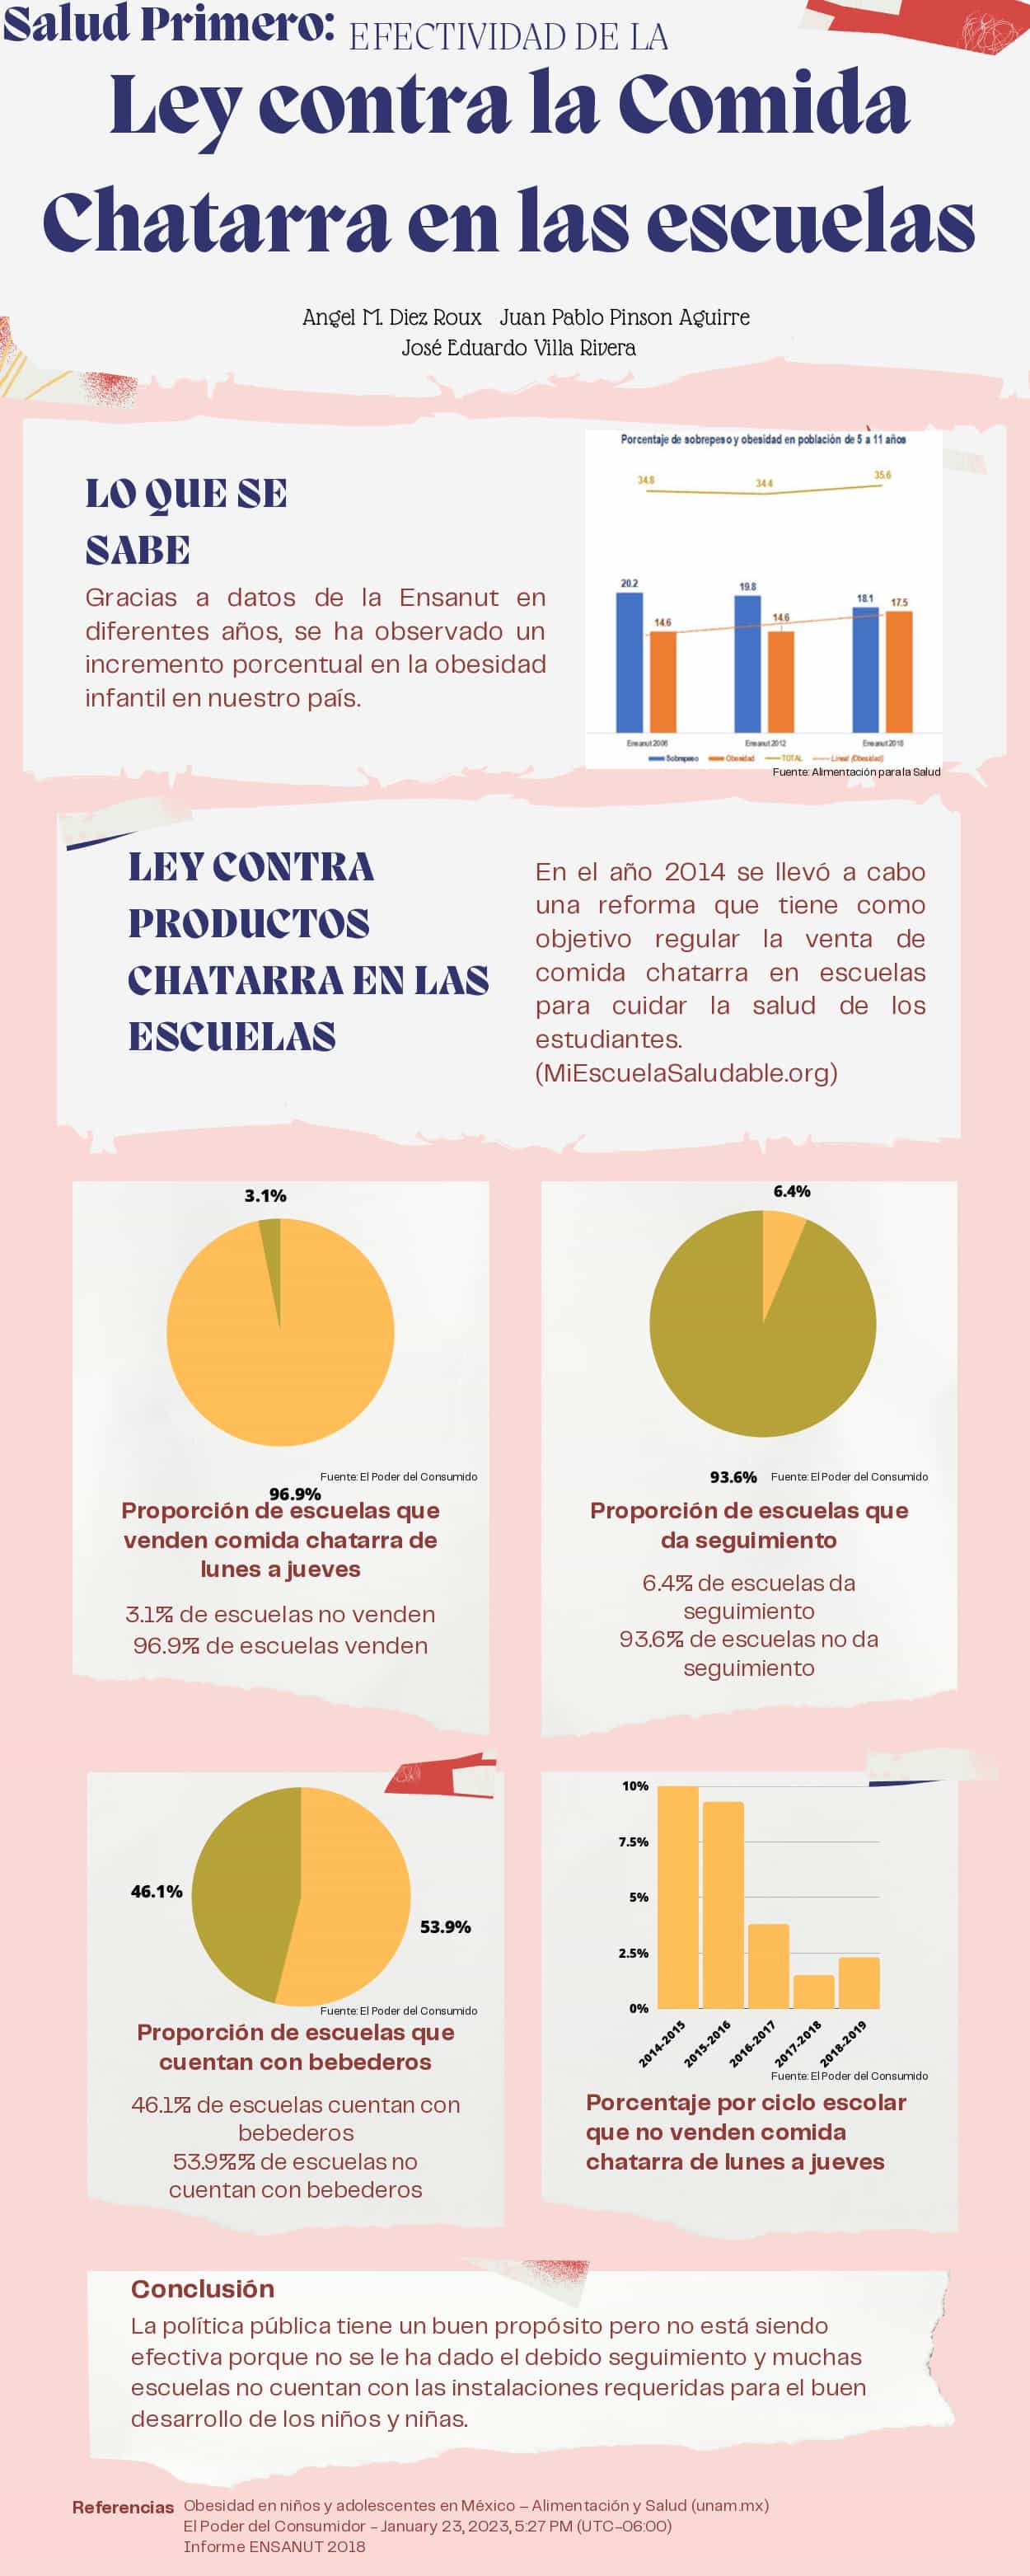 Infografía sobre Ley contra la Comida Chatarra en las escuelas